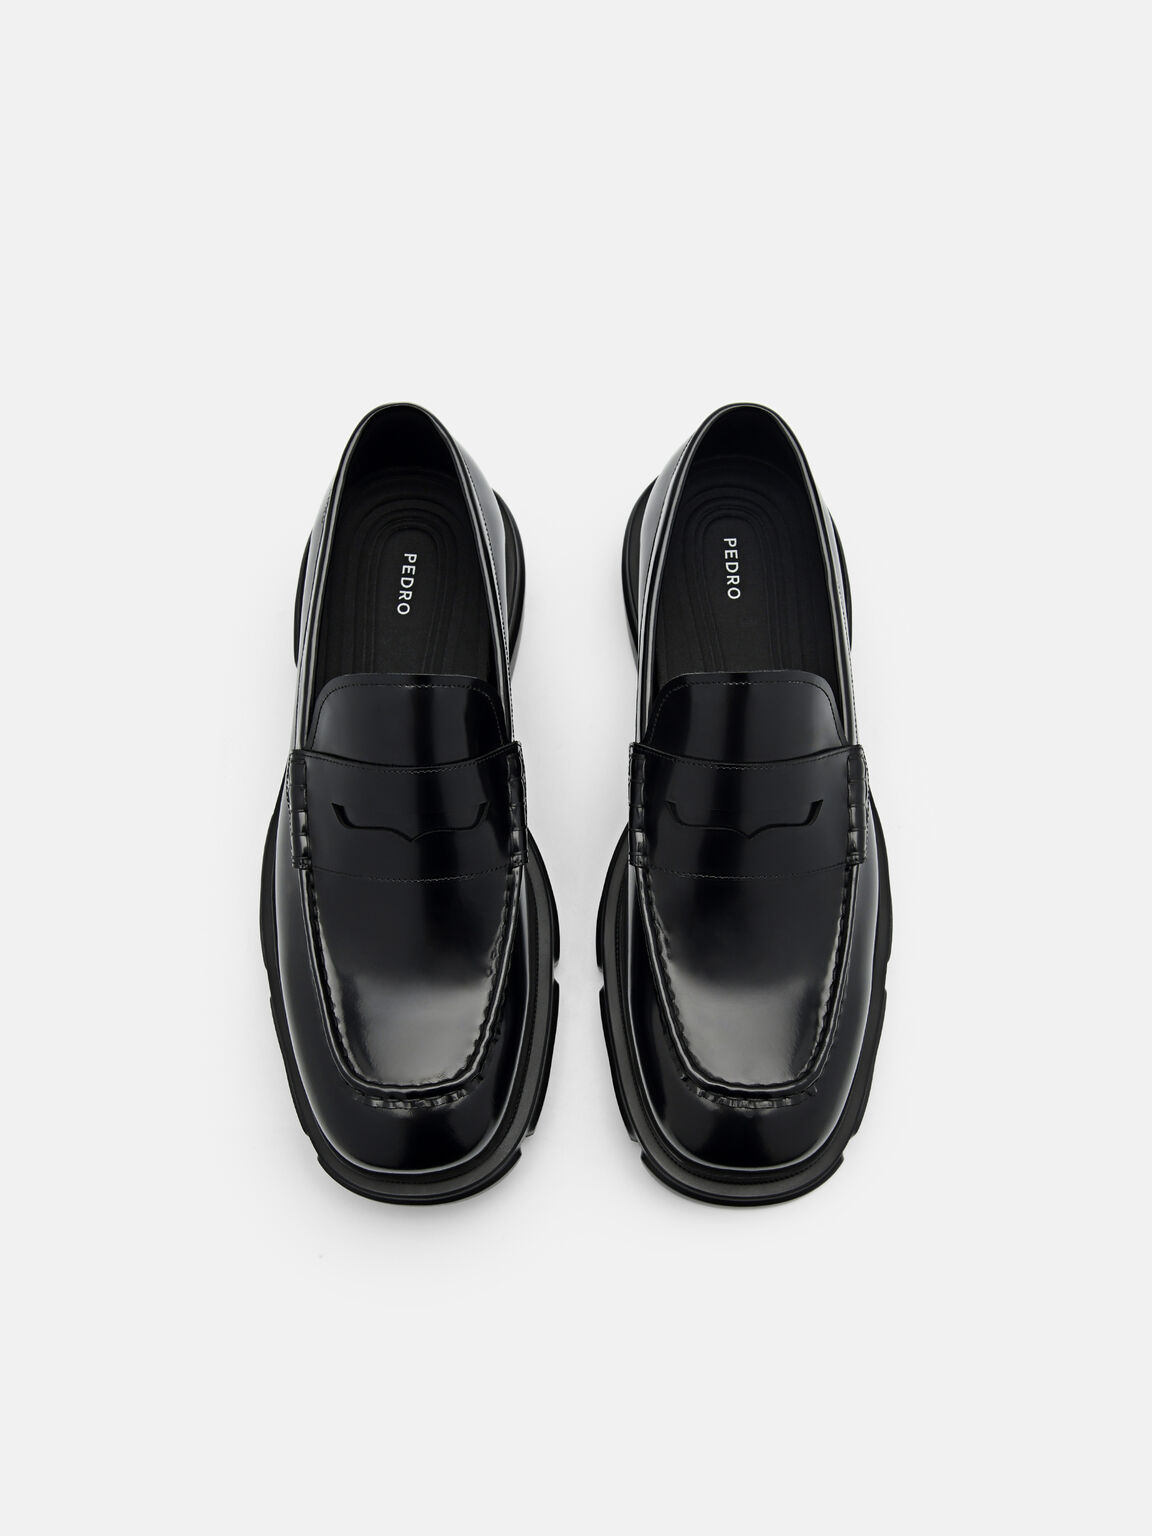 Ellis Leather Loafers, Black